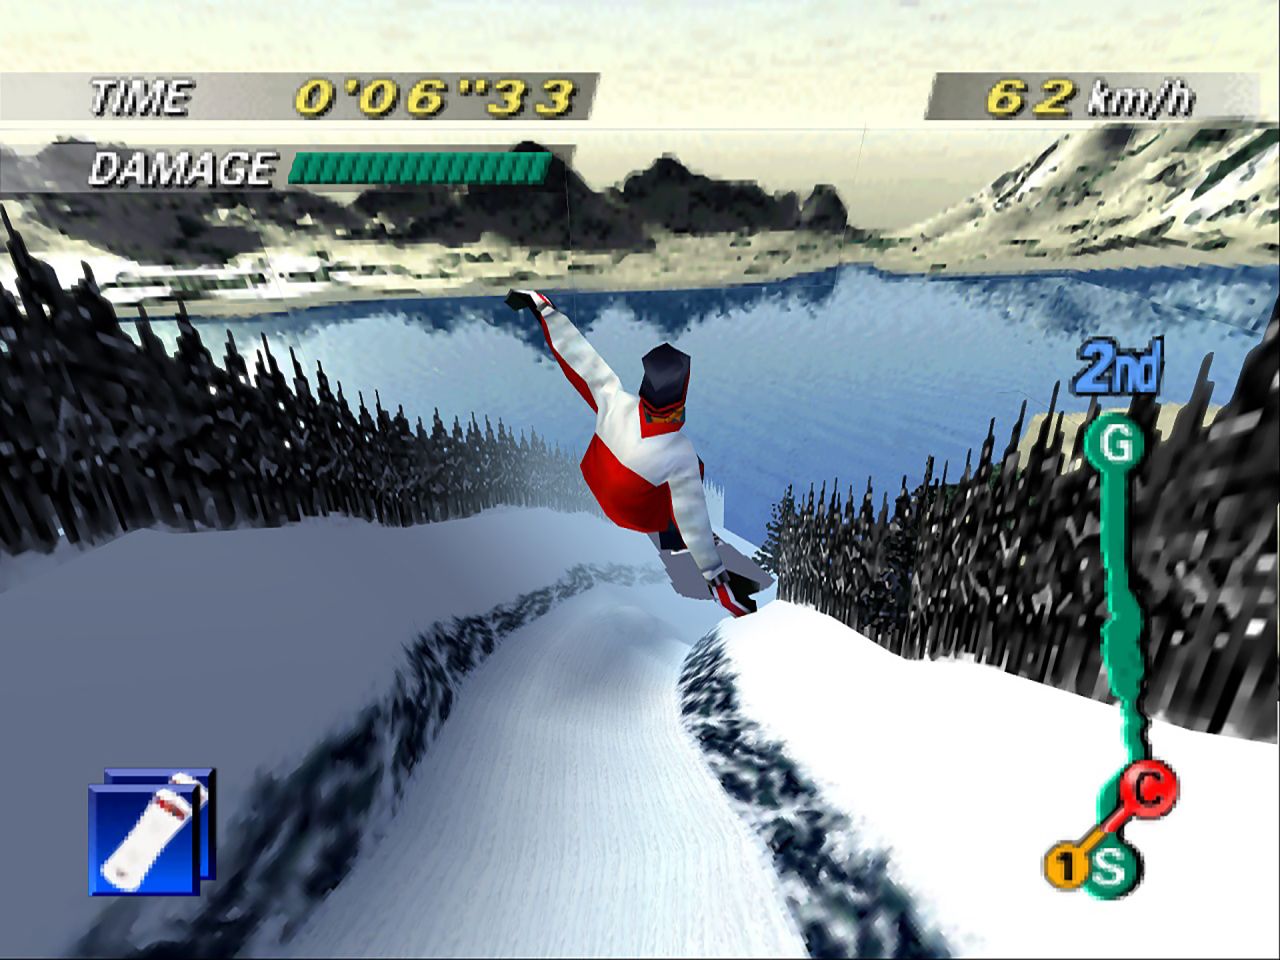 N64 games image 1